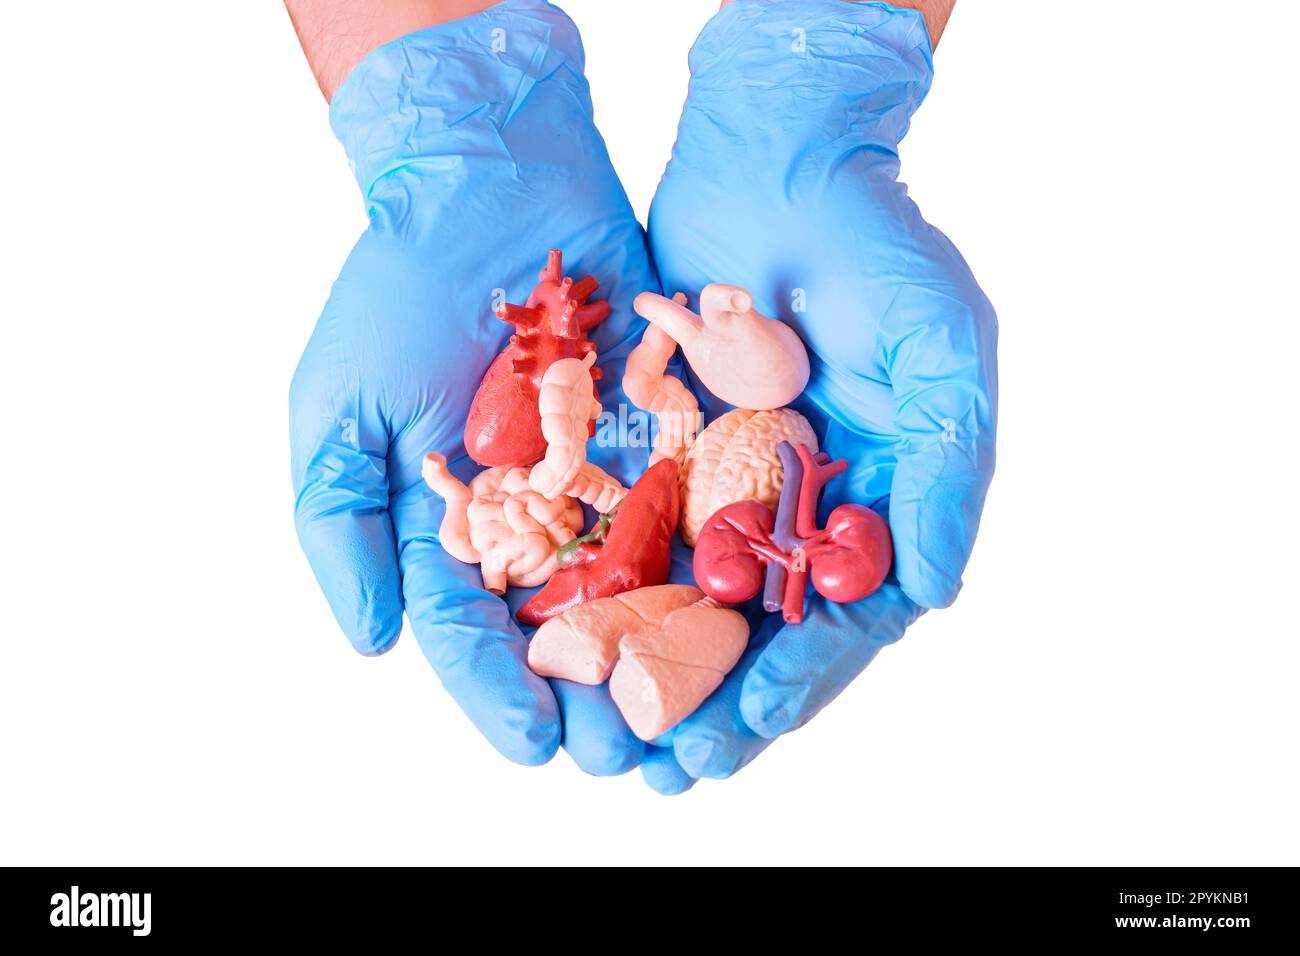 Coppia di mani blu con guanti chirurgici che tengono modelli anatomici miniaturizzati di organi umani essenziali. Medicina, anatomia, salute e donazioni backg relativo Foto Stock